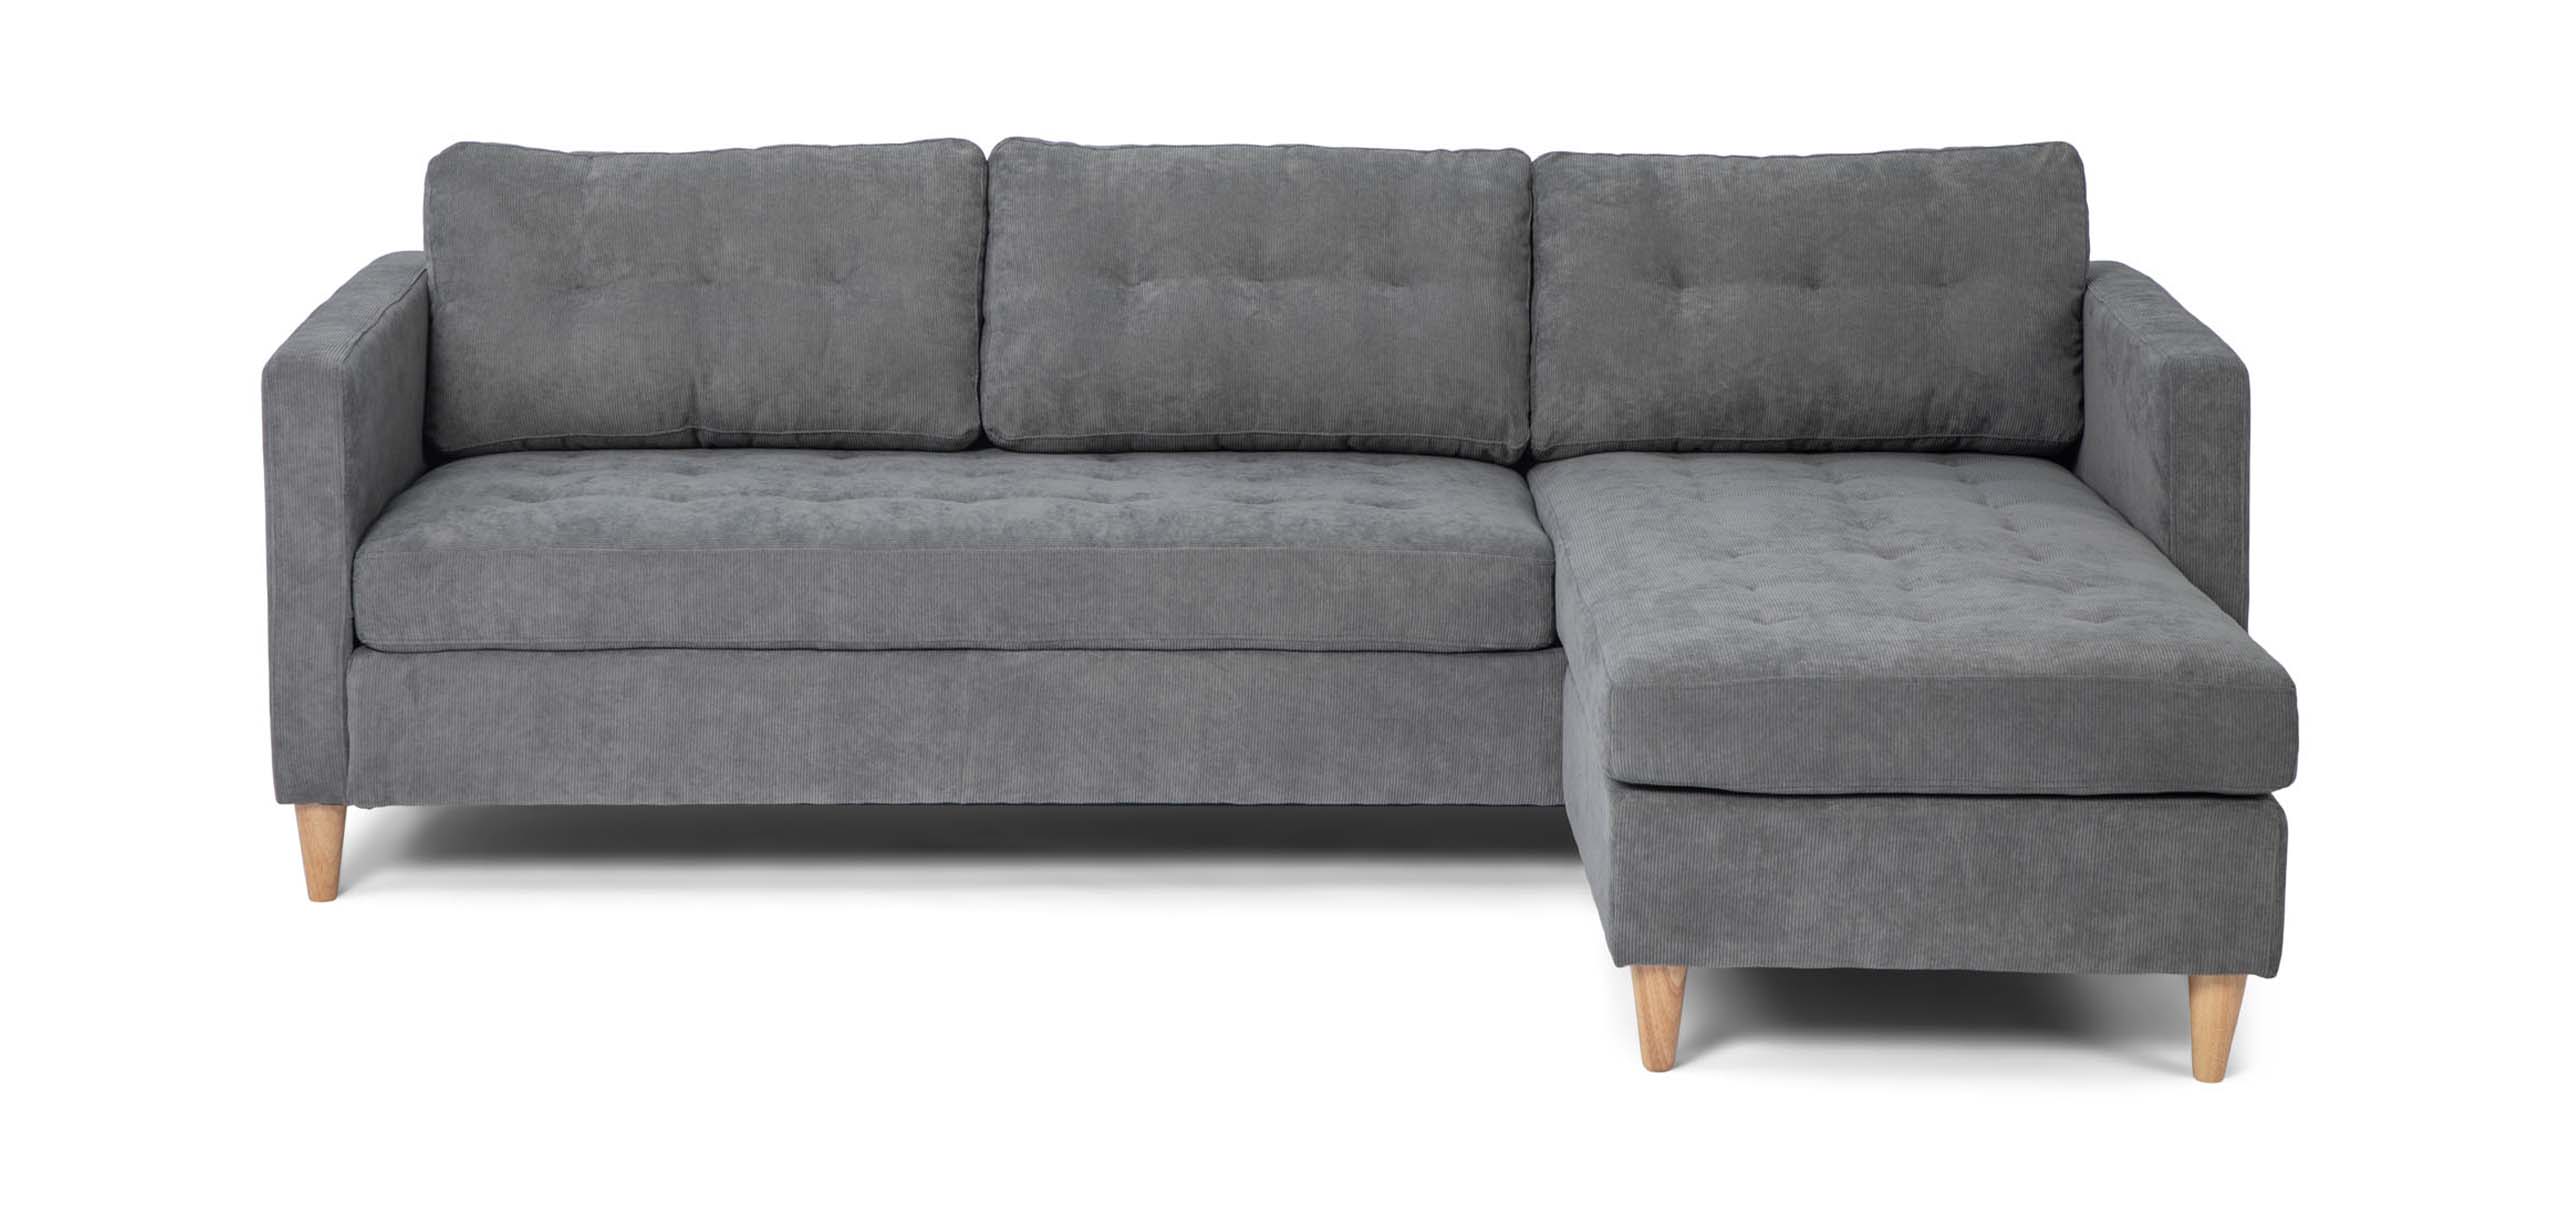 Marino sofa frontview